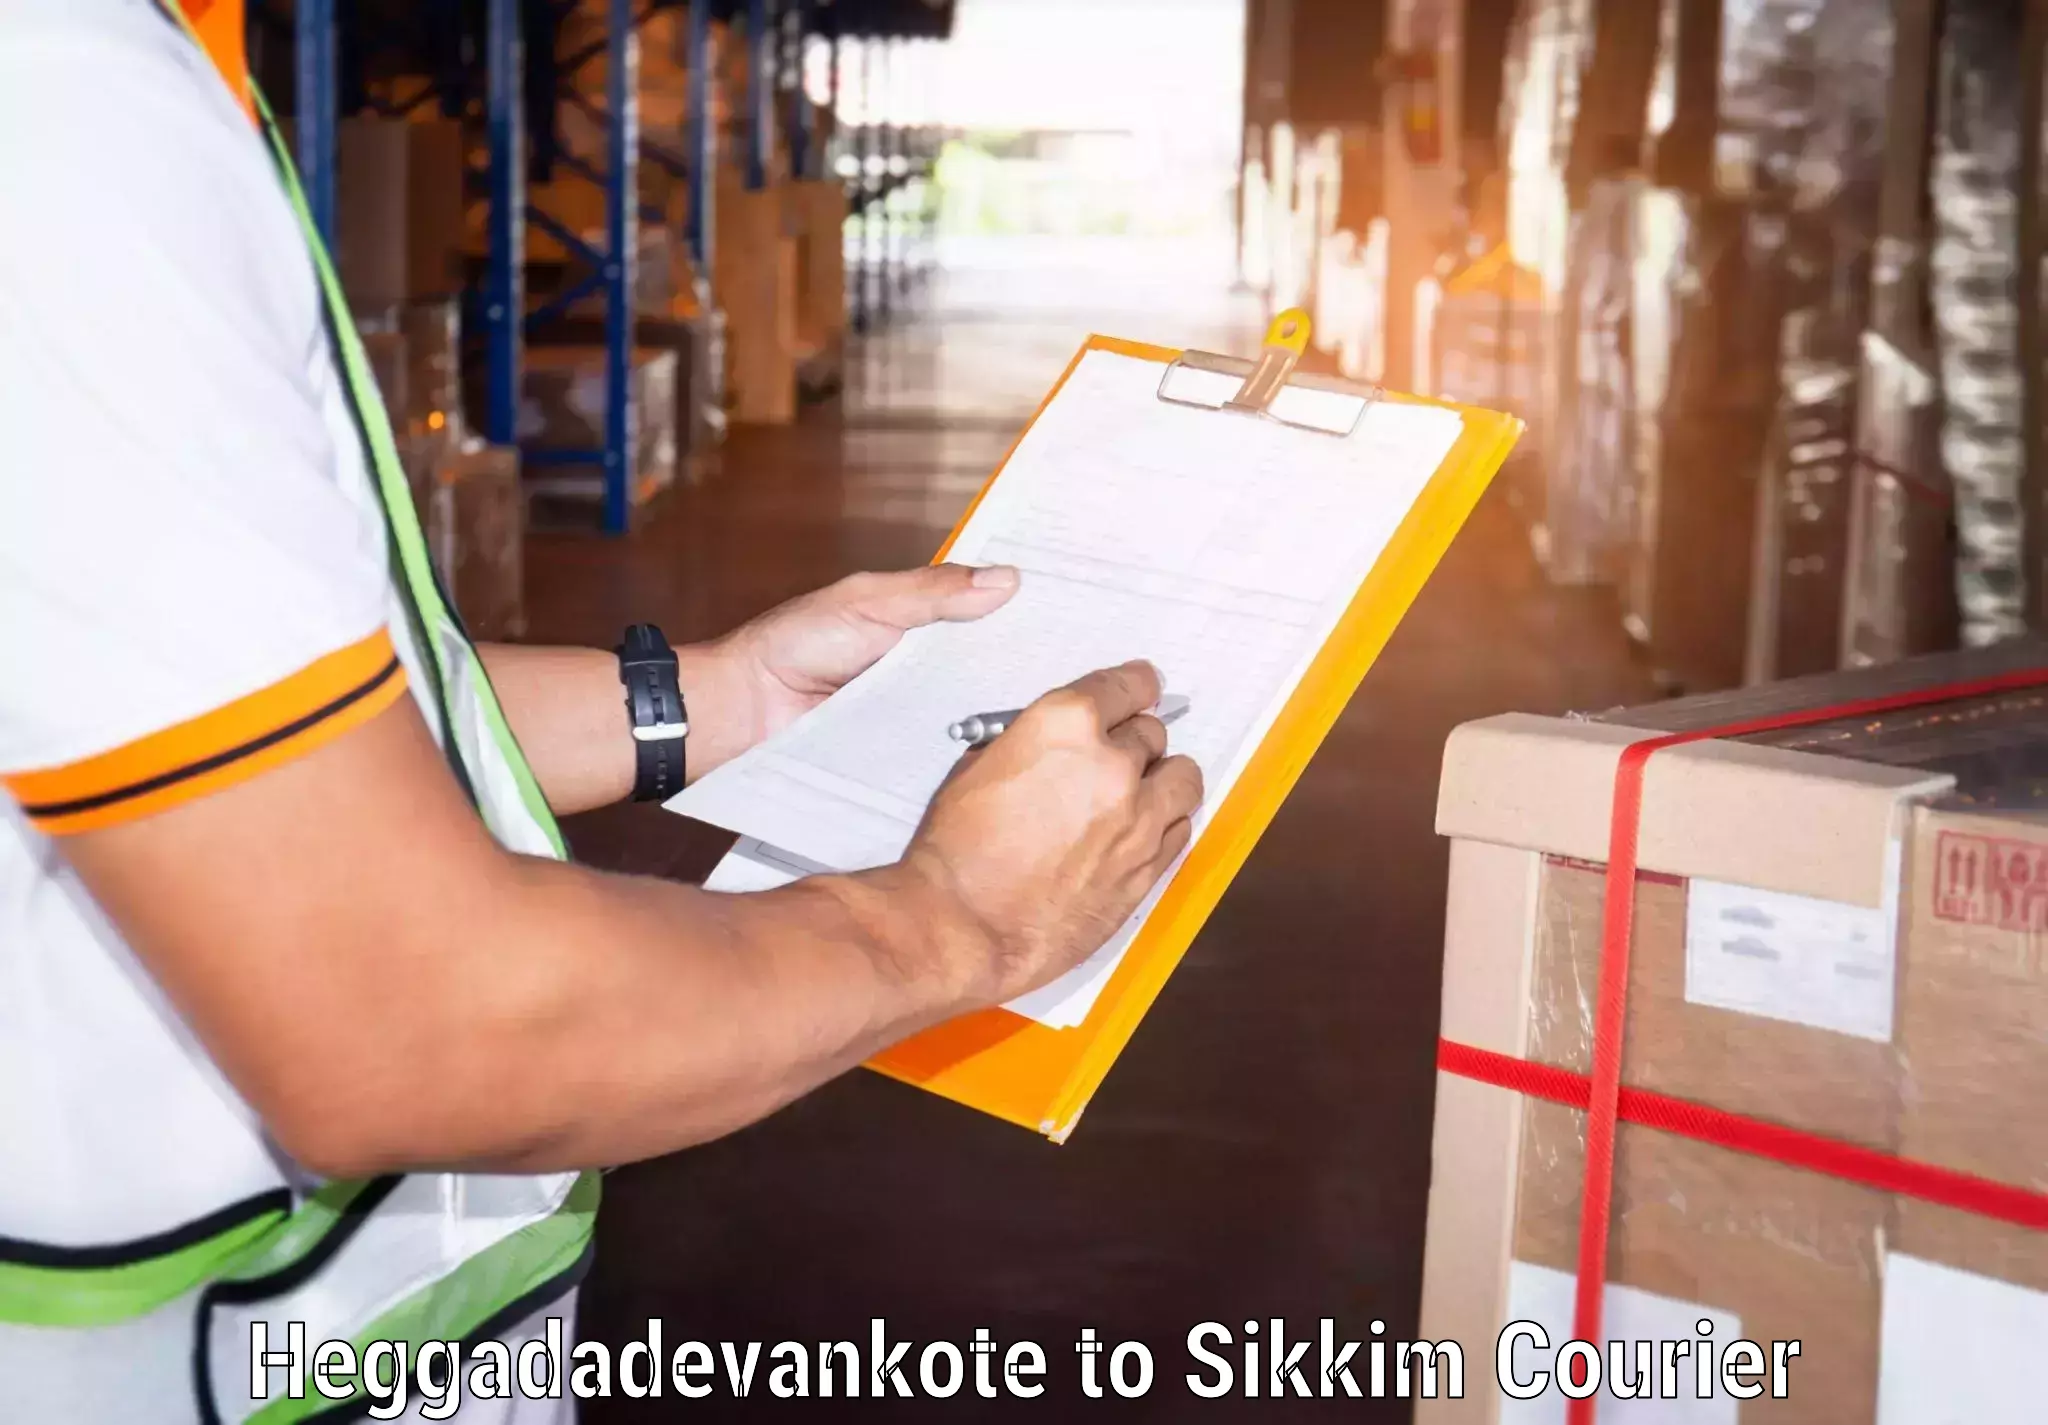 Bulk shipment Heggadadevankote to North Sikkim